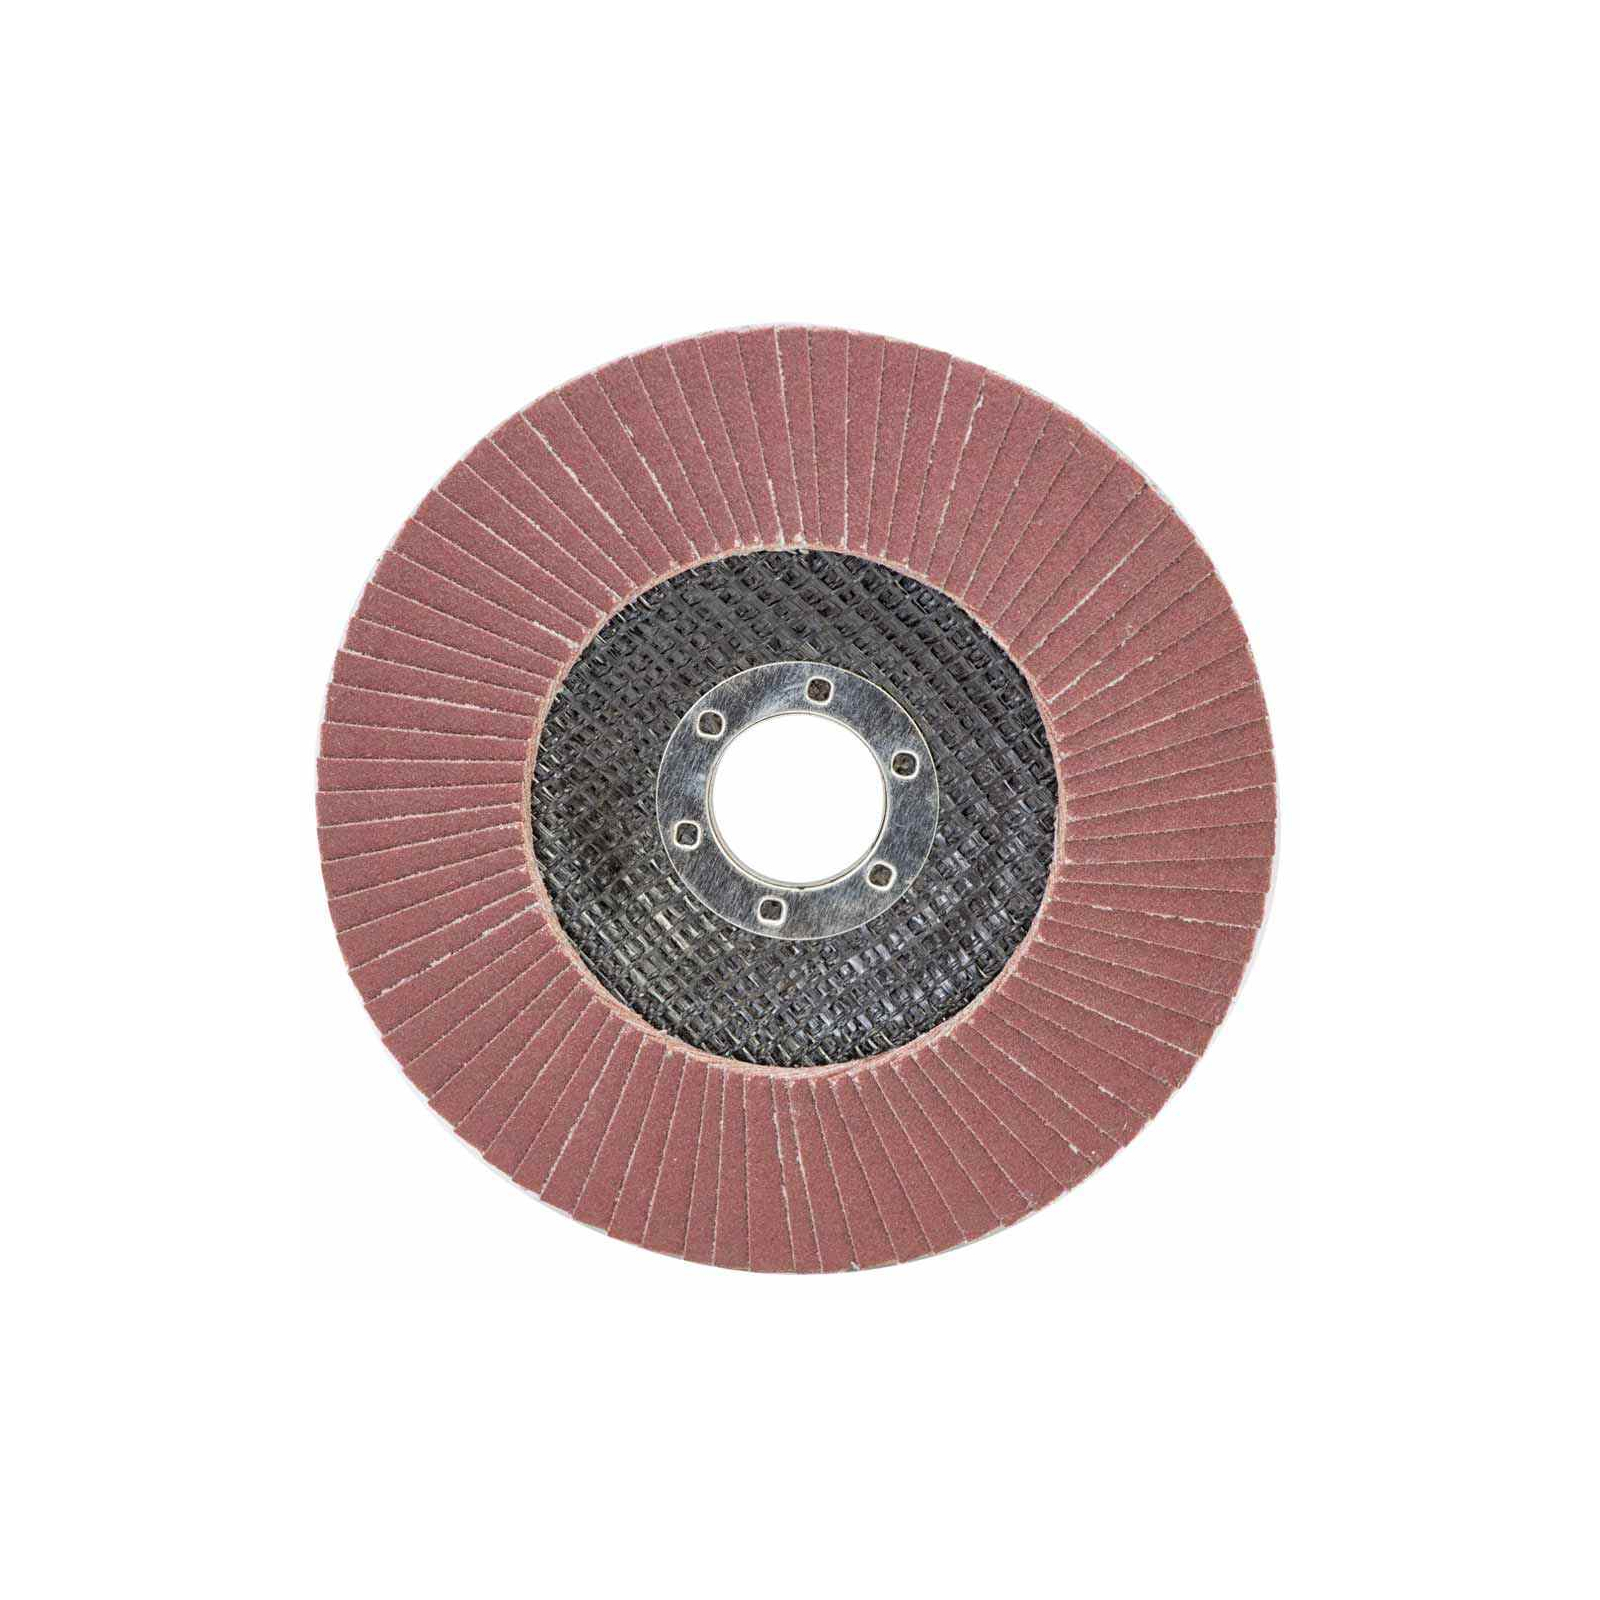 Круг зачистной Sigma лепестковый торцевой Т29 (конический) 125мм P120 (9172661)